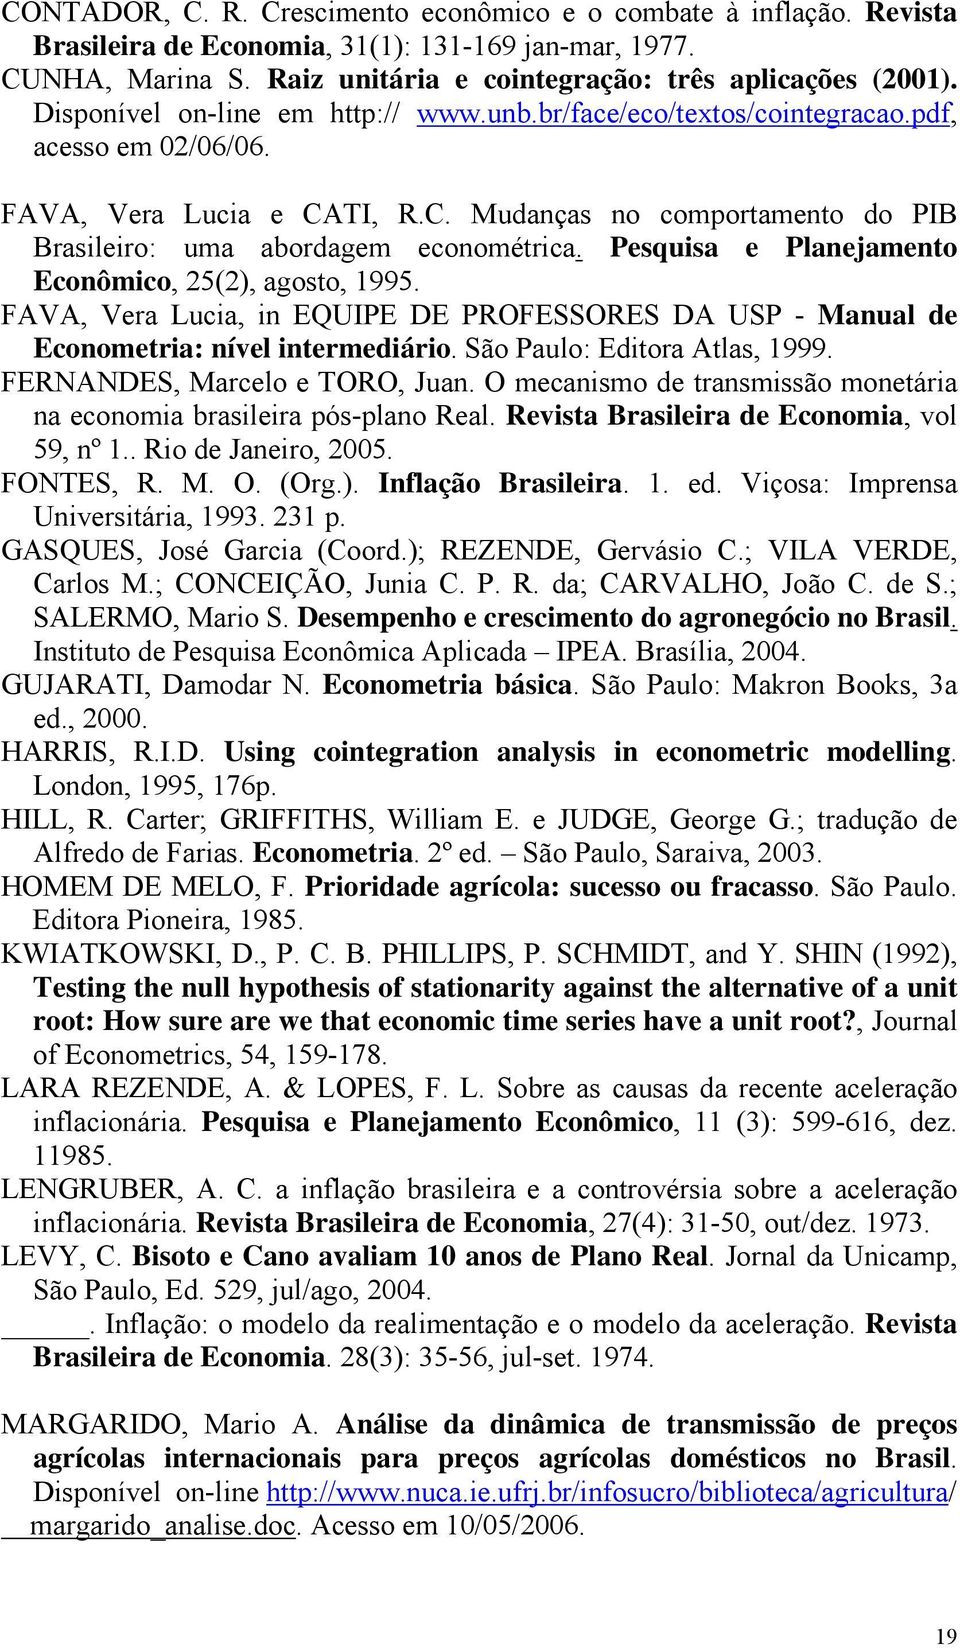 Pesquisa e Planejamento Econômico, 25(2), agosto, 1995. FAVA, Vera Lucia, in EQUIPE DE PROFESSORES DA USP - Manual de Econometria: nível intermediário. São Paulo: Editora Atlas, 1999.